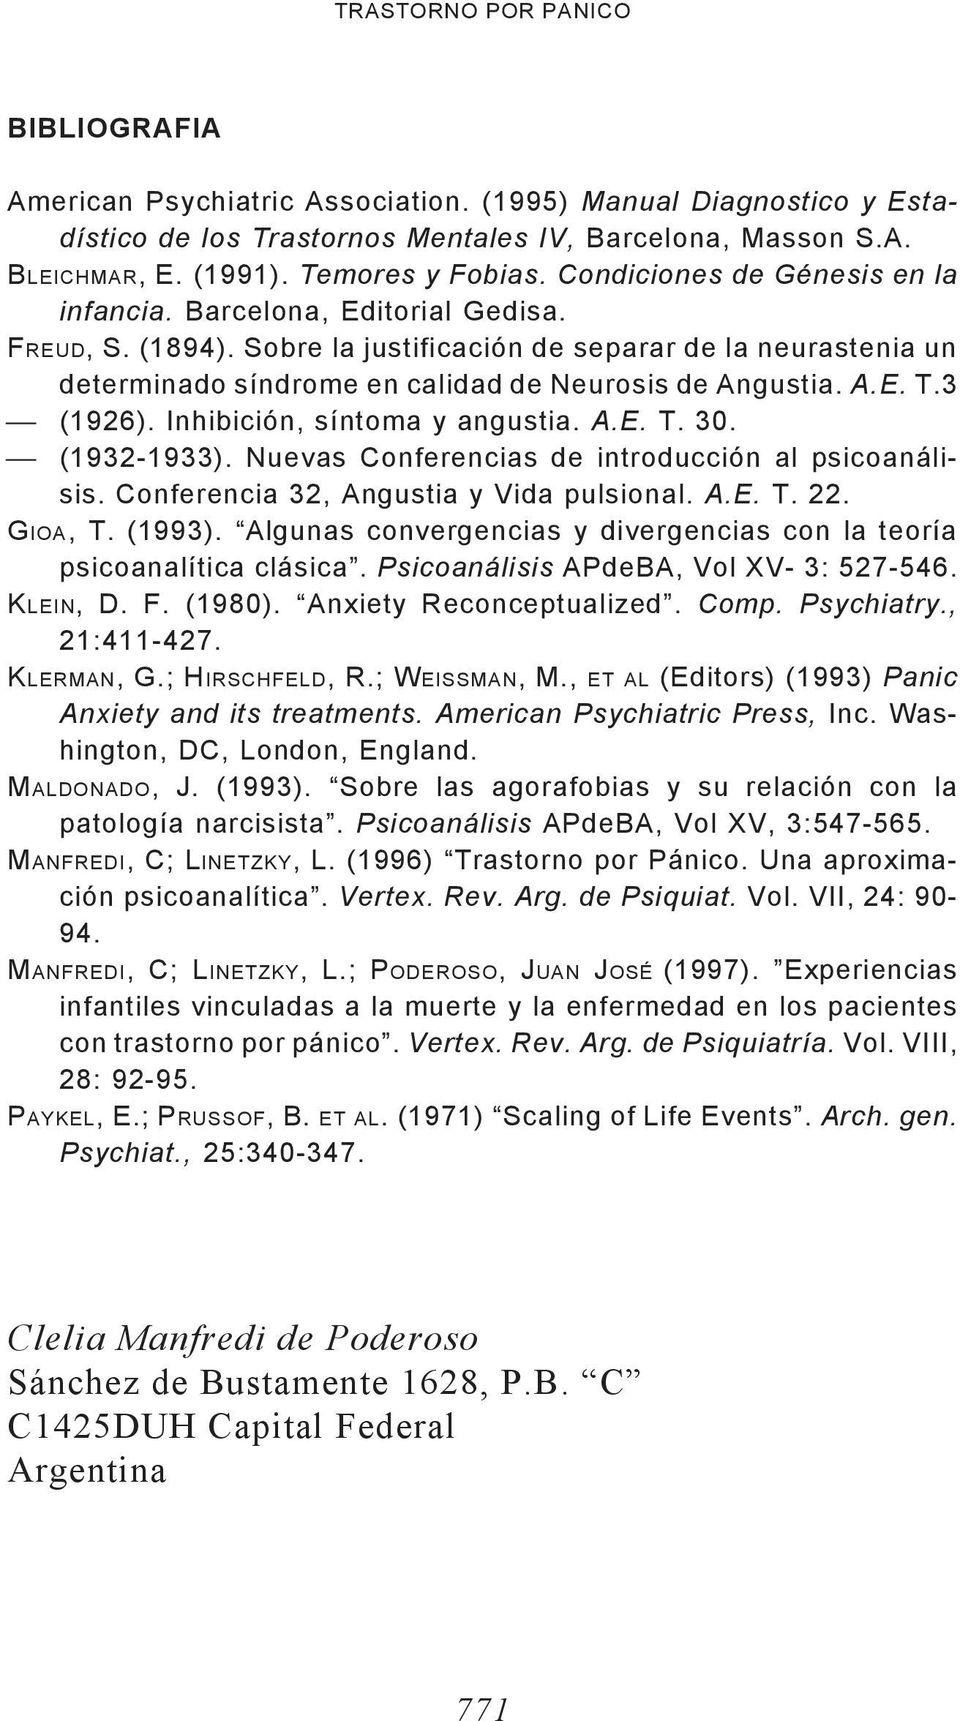 Sobre la justificación de separar de la neurastenia un determinado síndrome en calidad de Neurosis de Angustia. A.E. T.3 (1926). Inhibición, síntoma y angustia. A.E. T. 30. (1932-1933).